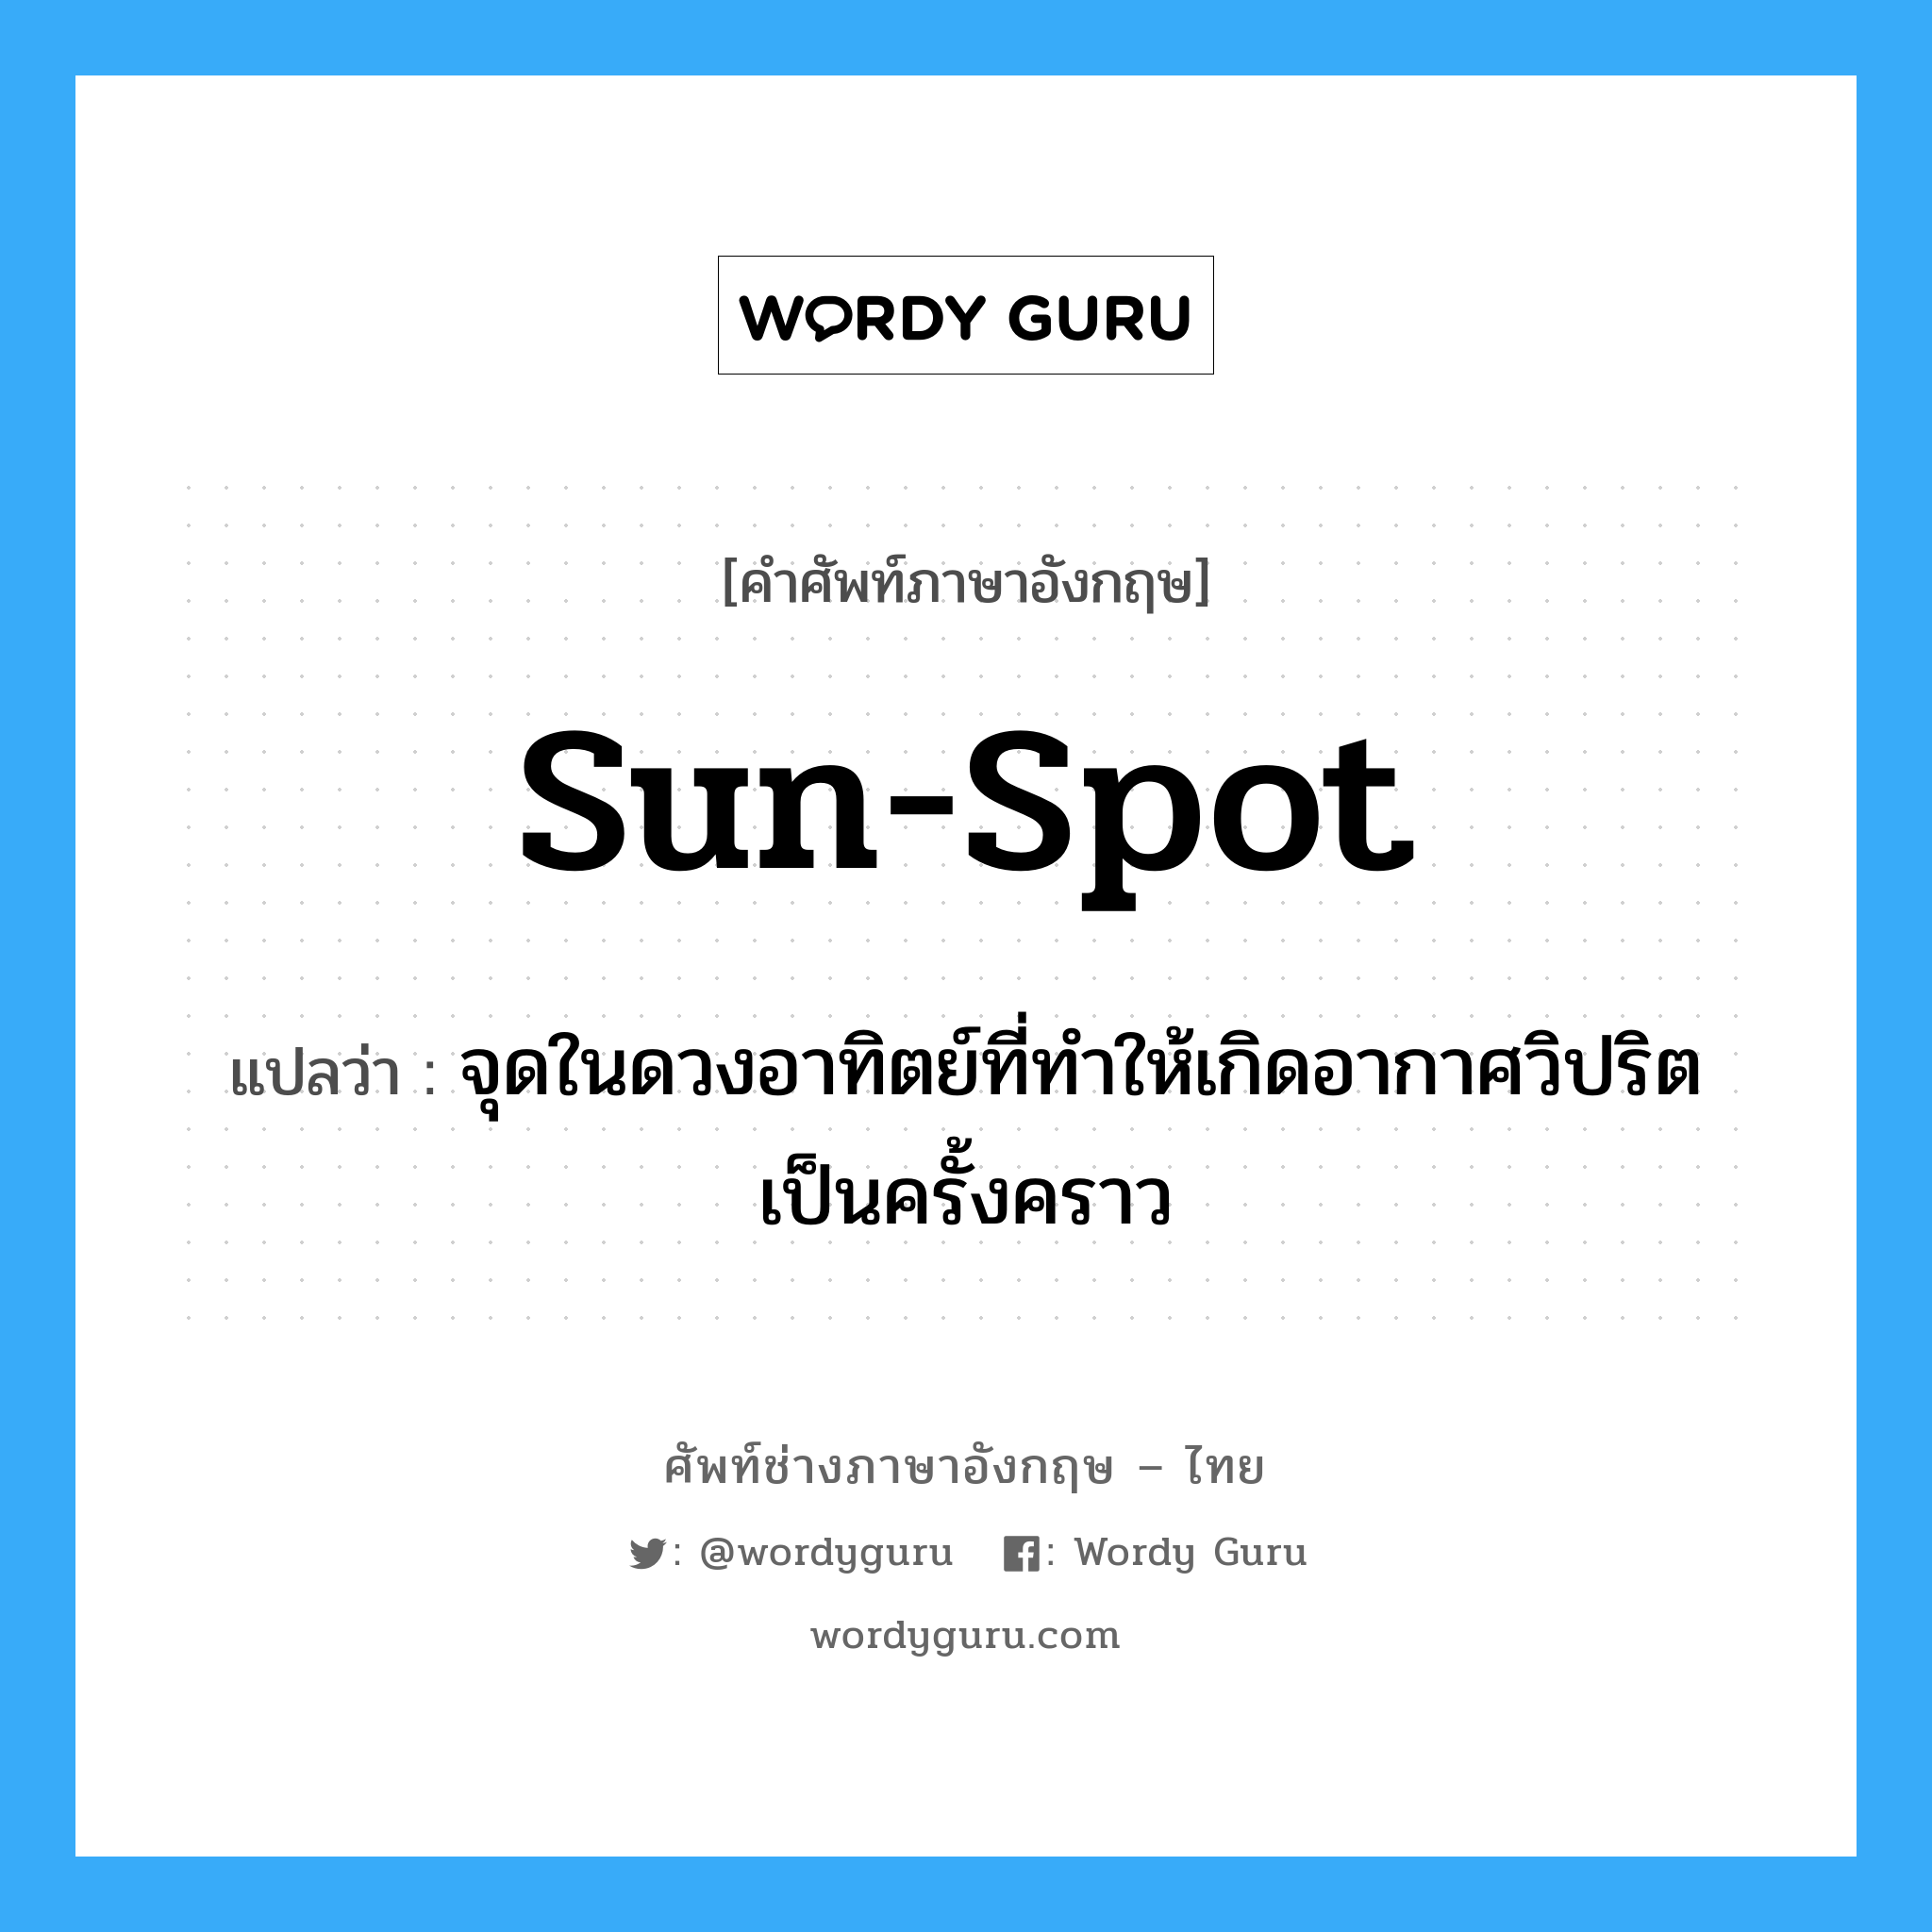 sun-spot แปลว่า?, คำศัพท์ช่างภาษาอังกฤษ - ไทย sun-spot คำศัพท์ภาษาอังกฤษ sun-spot แปลว่า จุดในดวงอาทิตย์ที่ทำให้เกิดอากาศวิปริตเป็นครั้งคราว